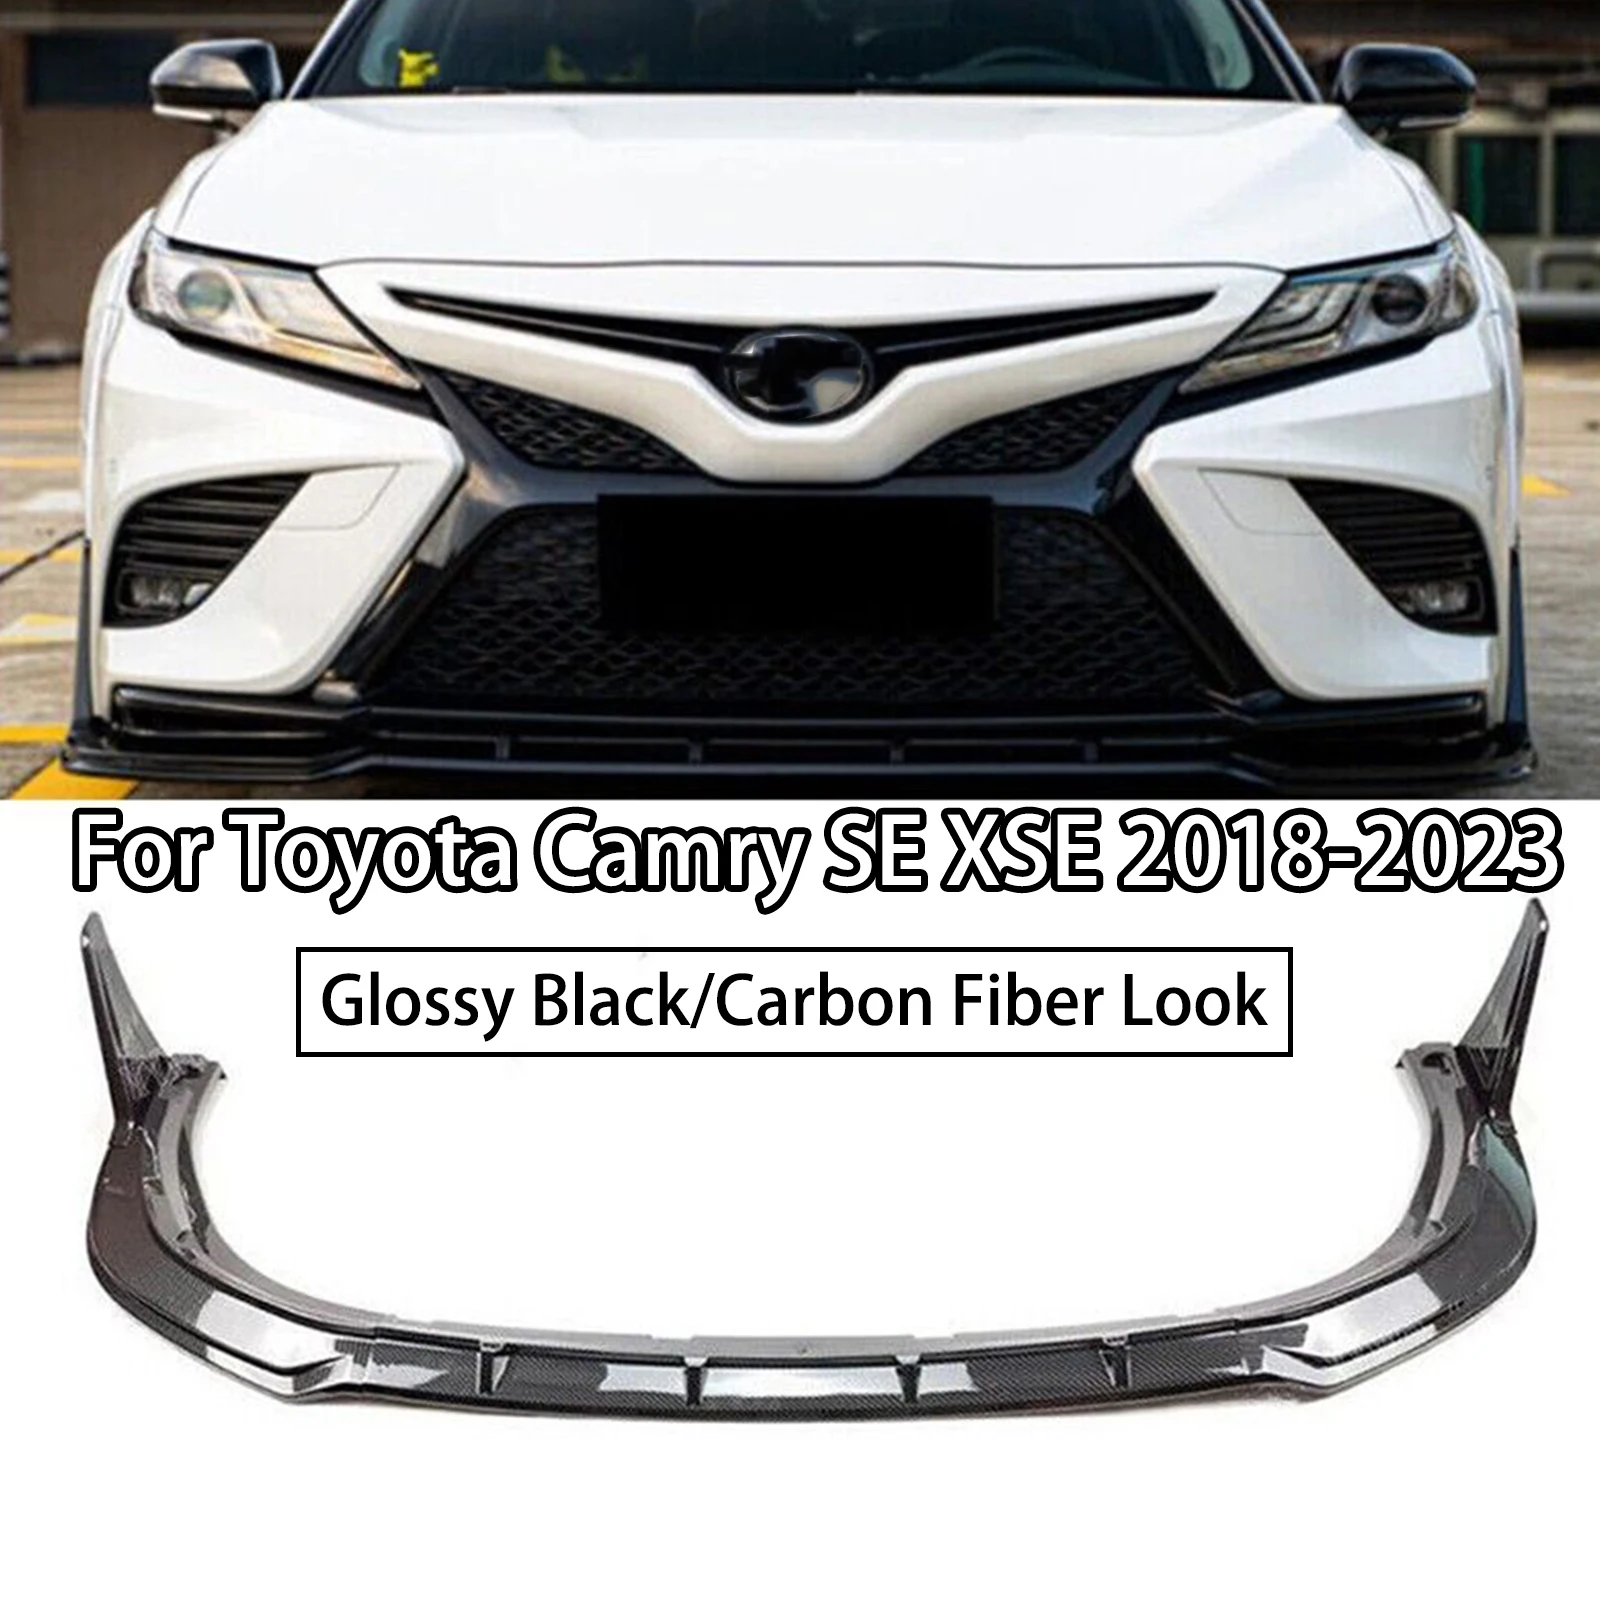 Для Toyota Camry SE XSE 2018-2023 Диффузор Для Губ Переднего Бампера, Спойлер, Сплиттер, Обвес в стиле YOFER, Глянцевый Черный Вид Из Углеродного Волокна